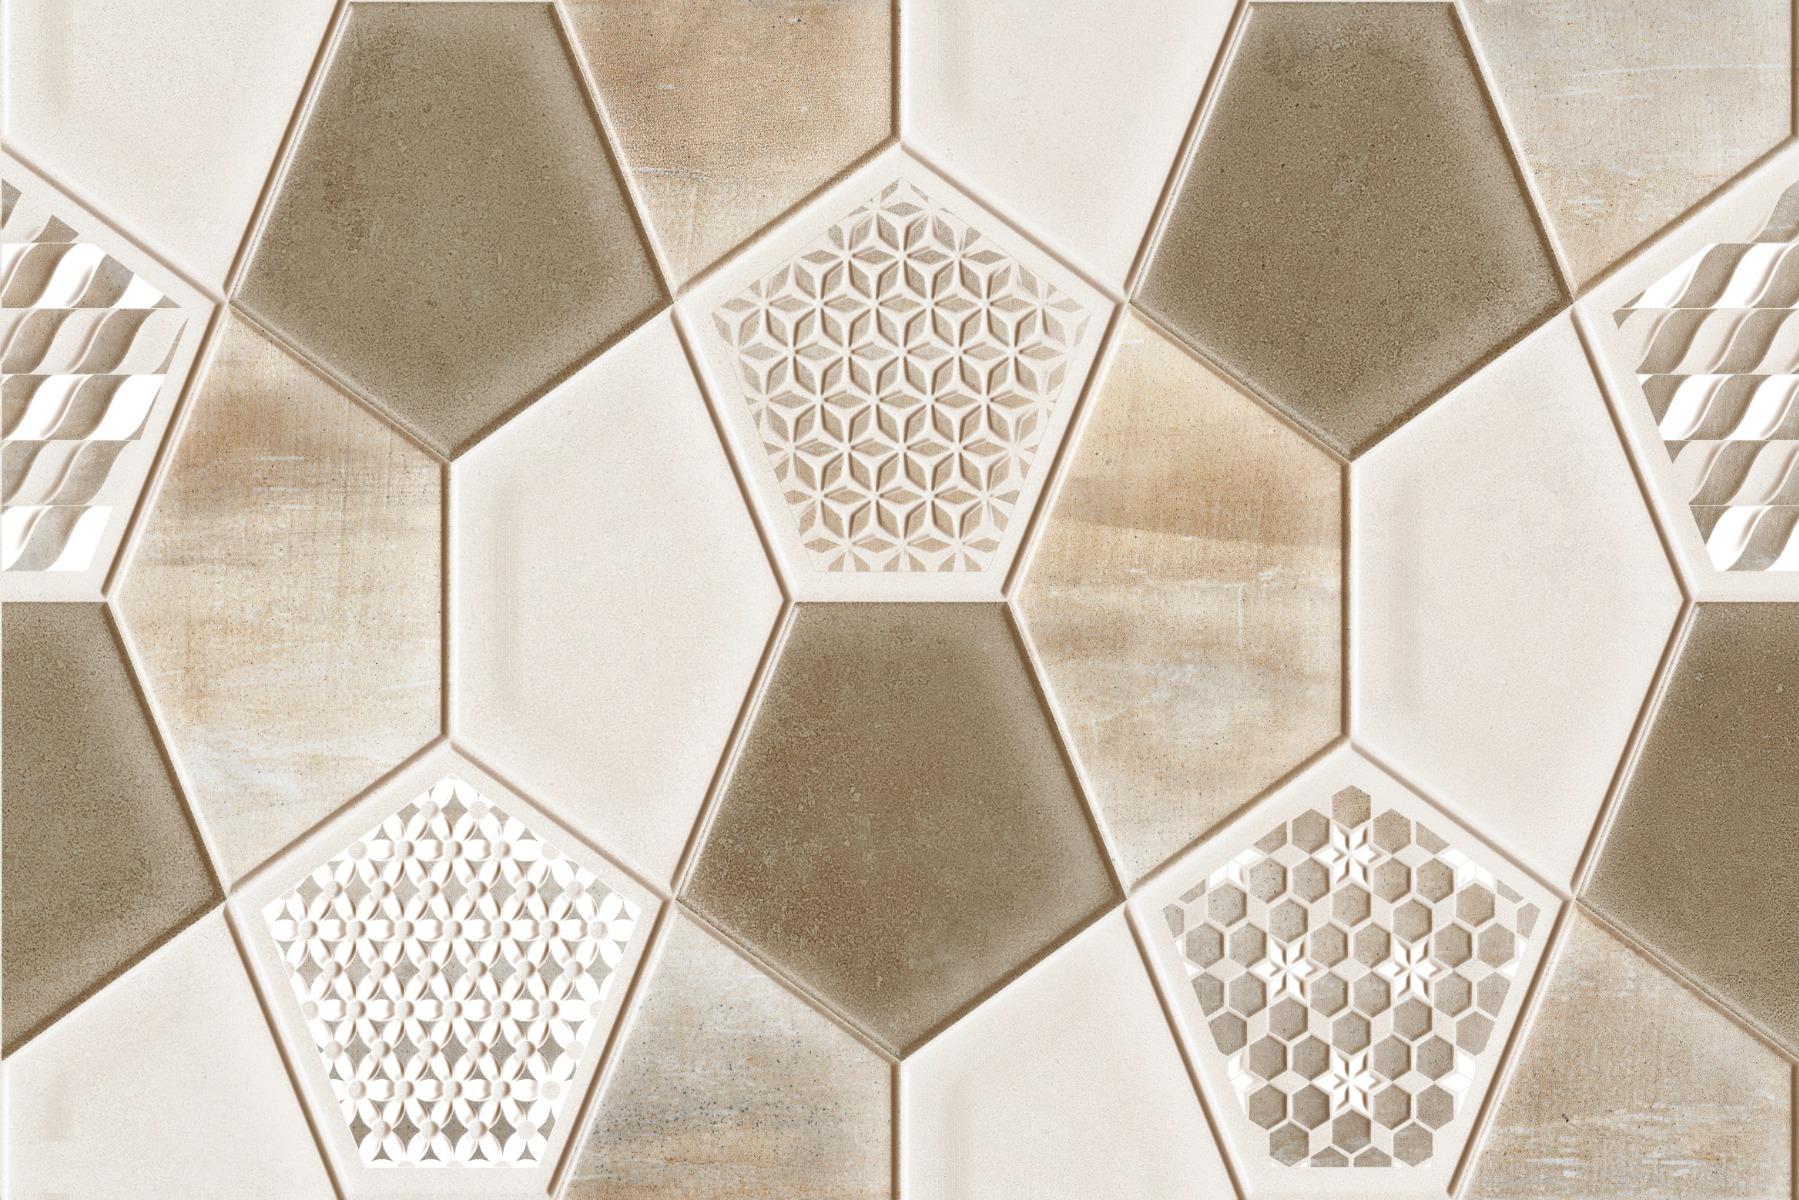 Vitrified Tiles for Bathroom Tiles, Kitchen Tiles, Accent Tiles, Dining Room Tiles